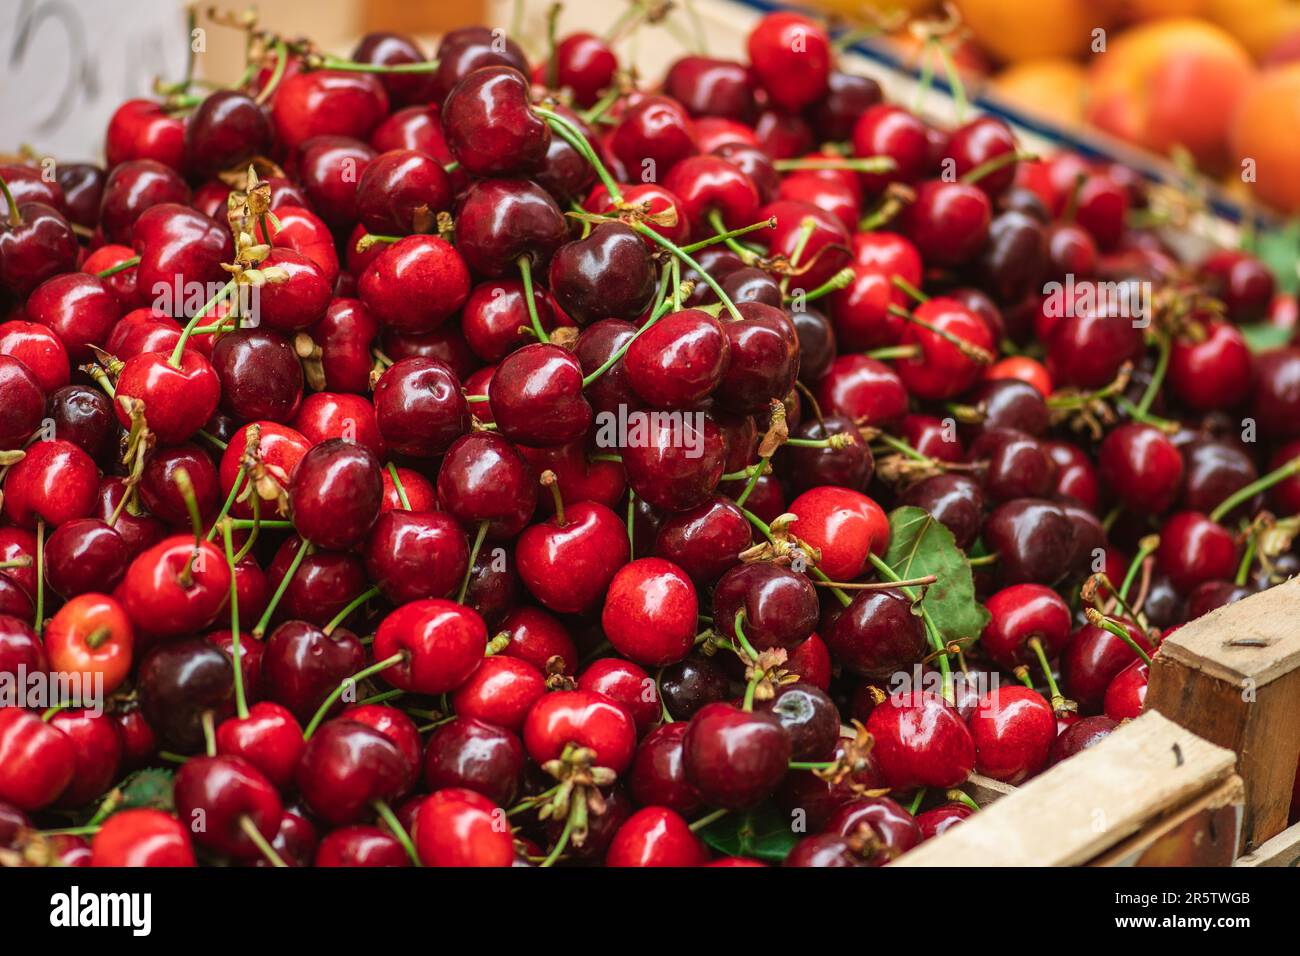 Cerise rouge mûre fraîche ou cerises fruits dans une boîte en bois dans un marché agricole en plein air, alimentation saine saisonnière. Concept de biologique, bio Banque D'Images